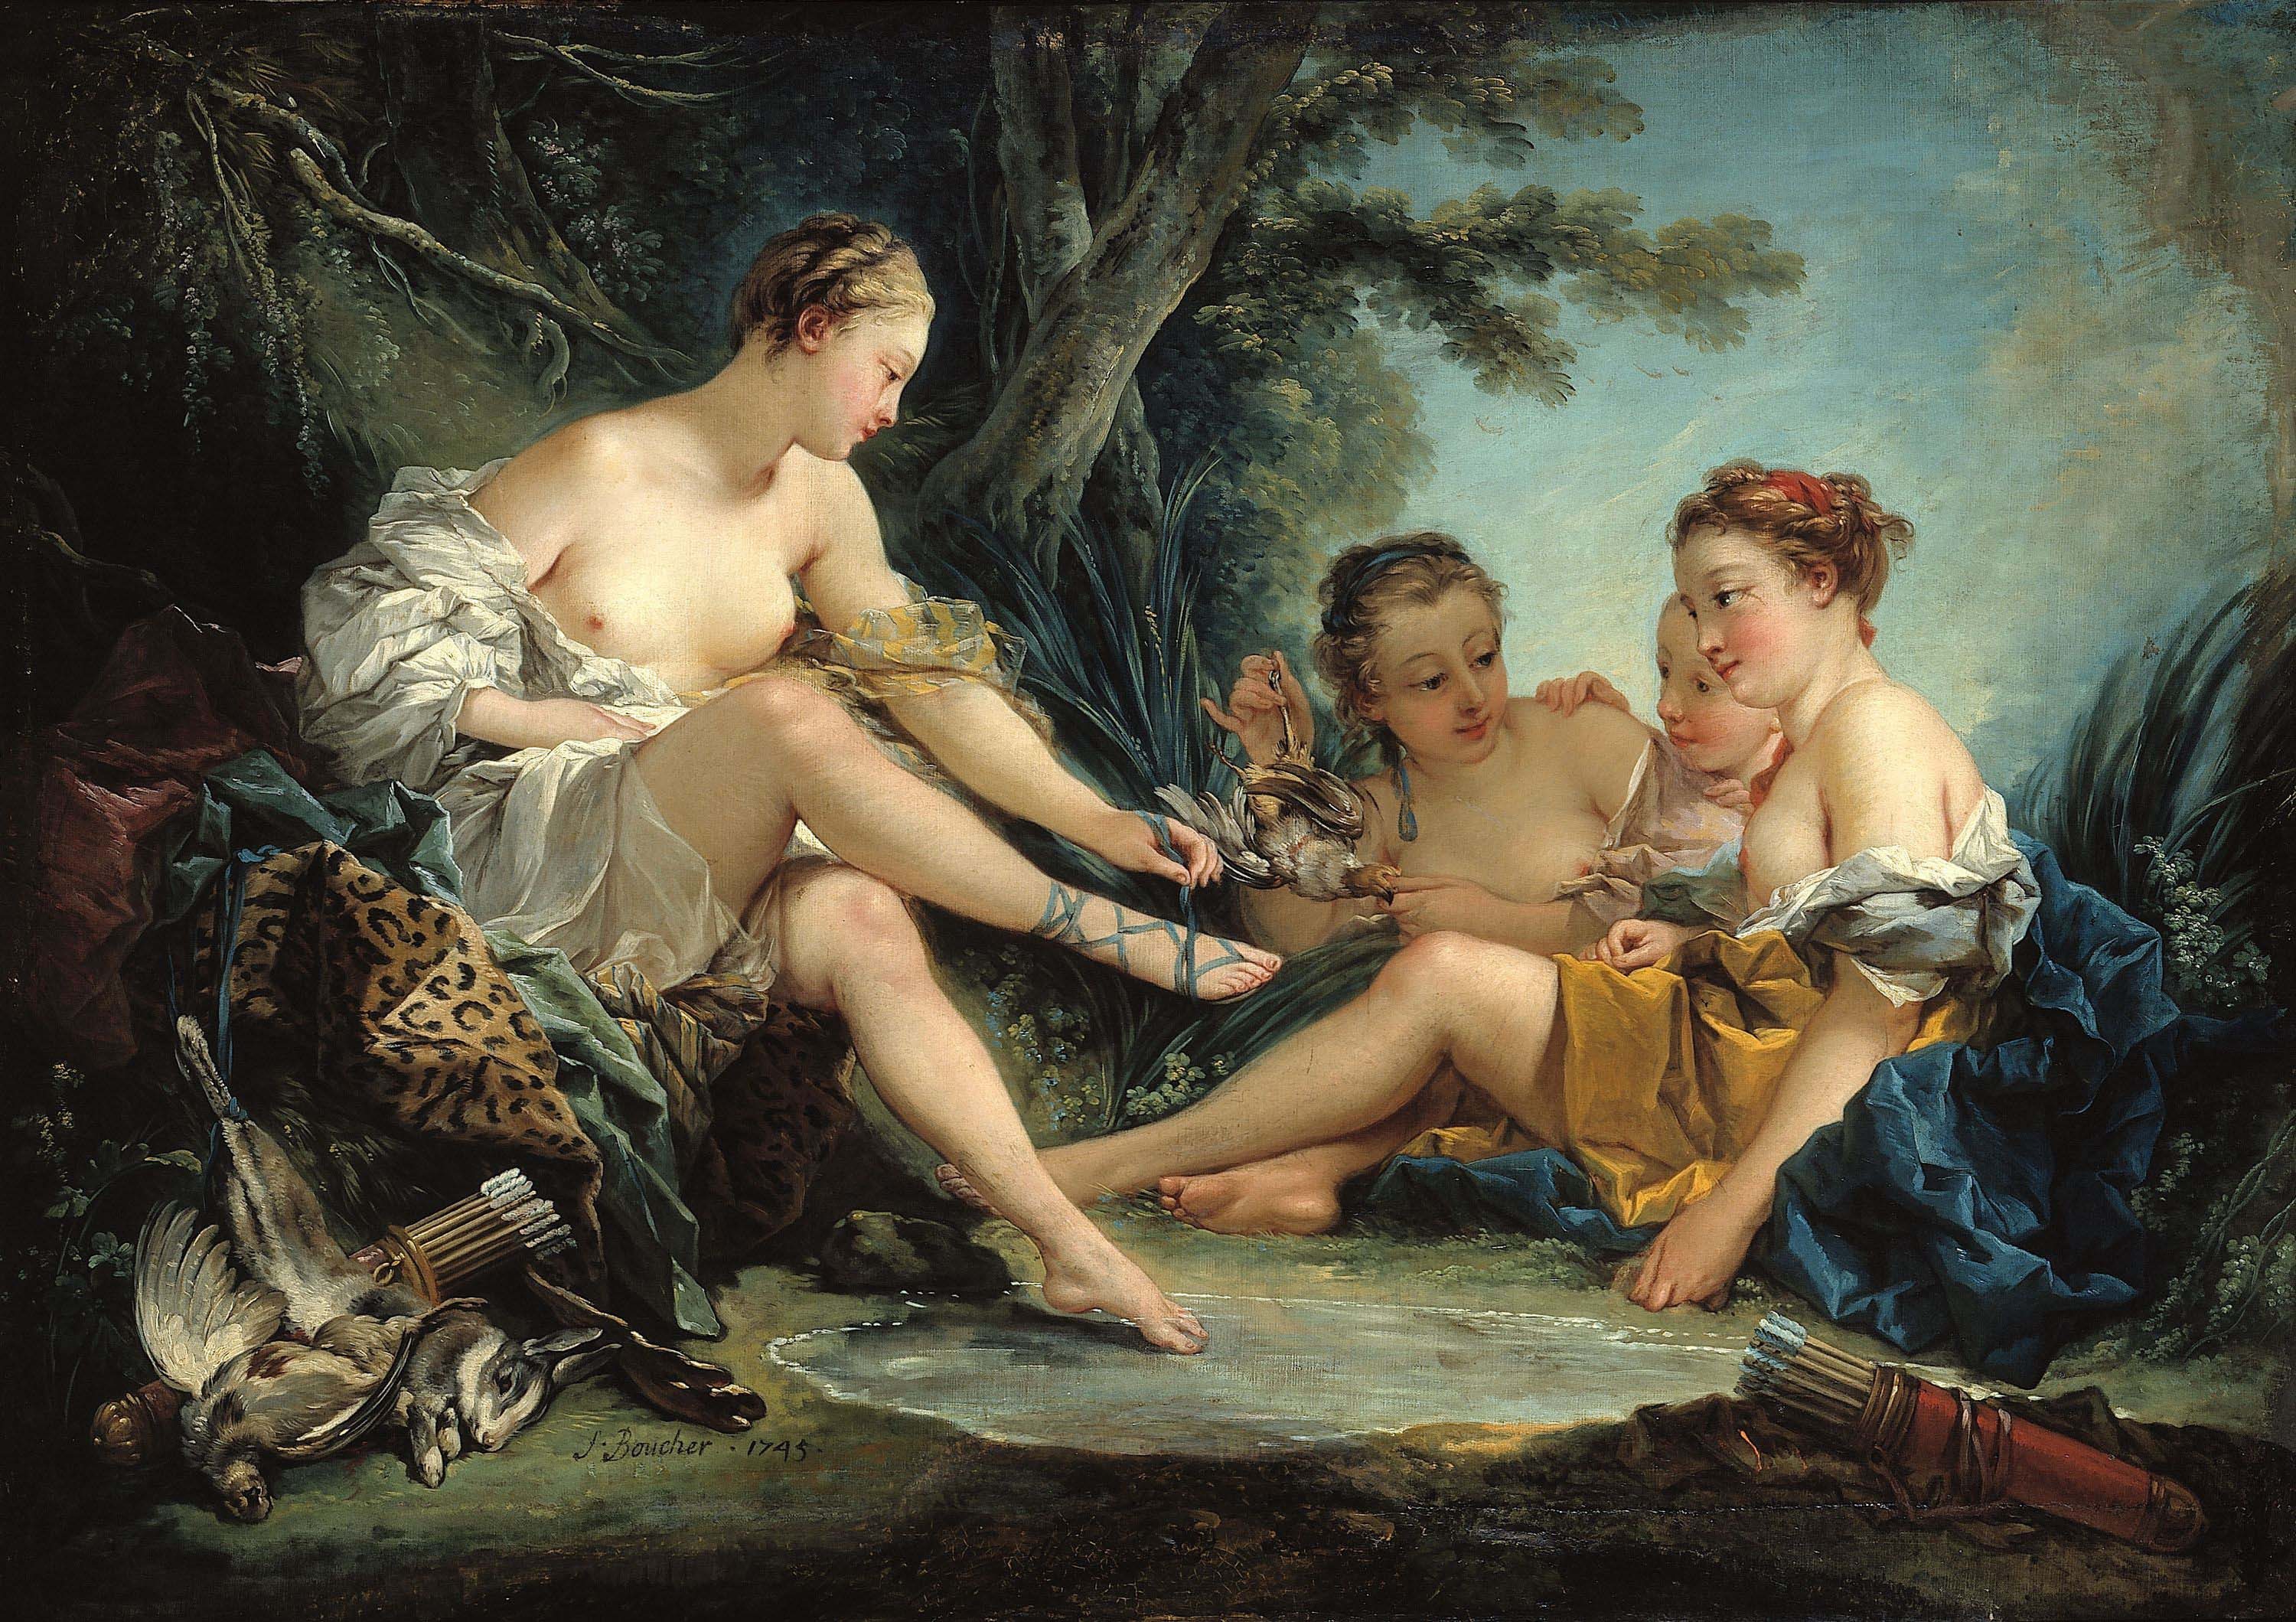 François Boucher, “Diane returns from hunting” (1745). Musée Cognacq-Jay, le musée du XVIIIe.